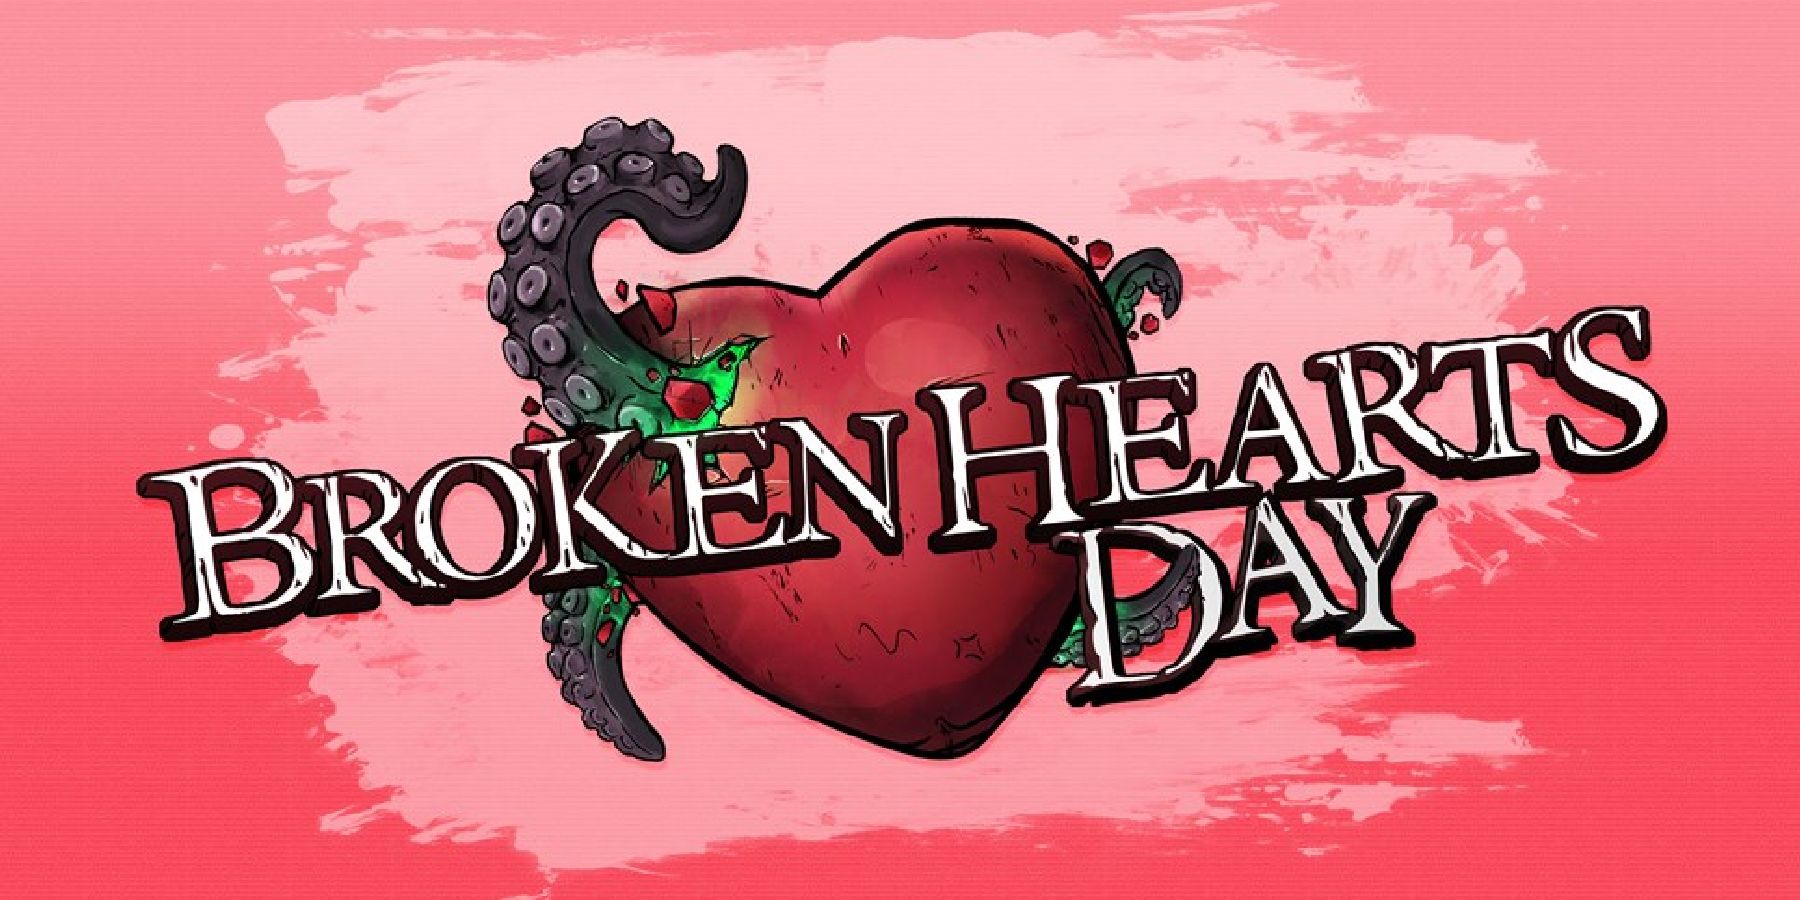 borderlands 3-broken-hearts-day-event-gearbox-2k-games-valentines-day-rewards-challenge-2022